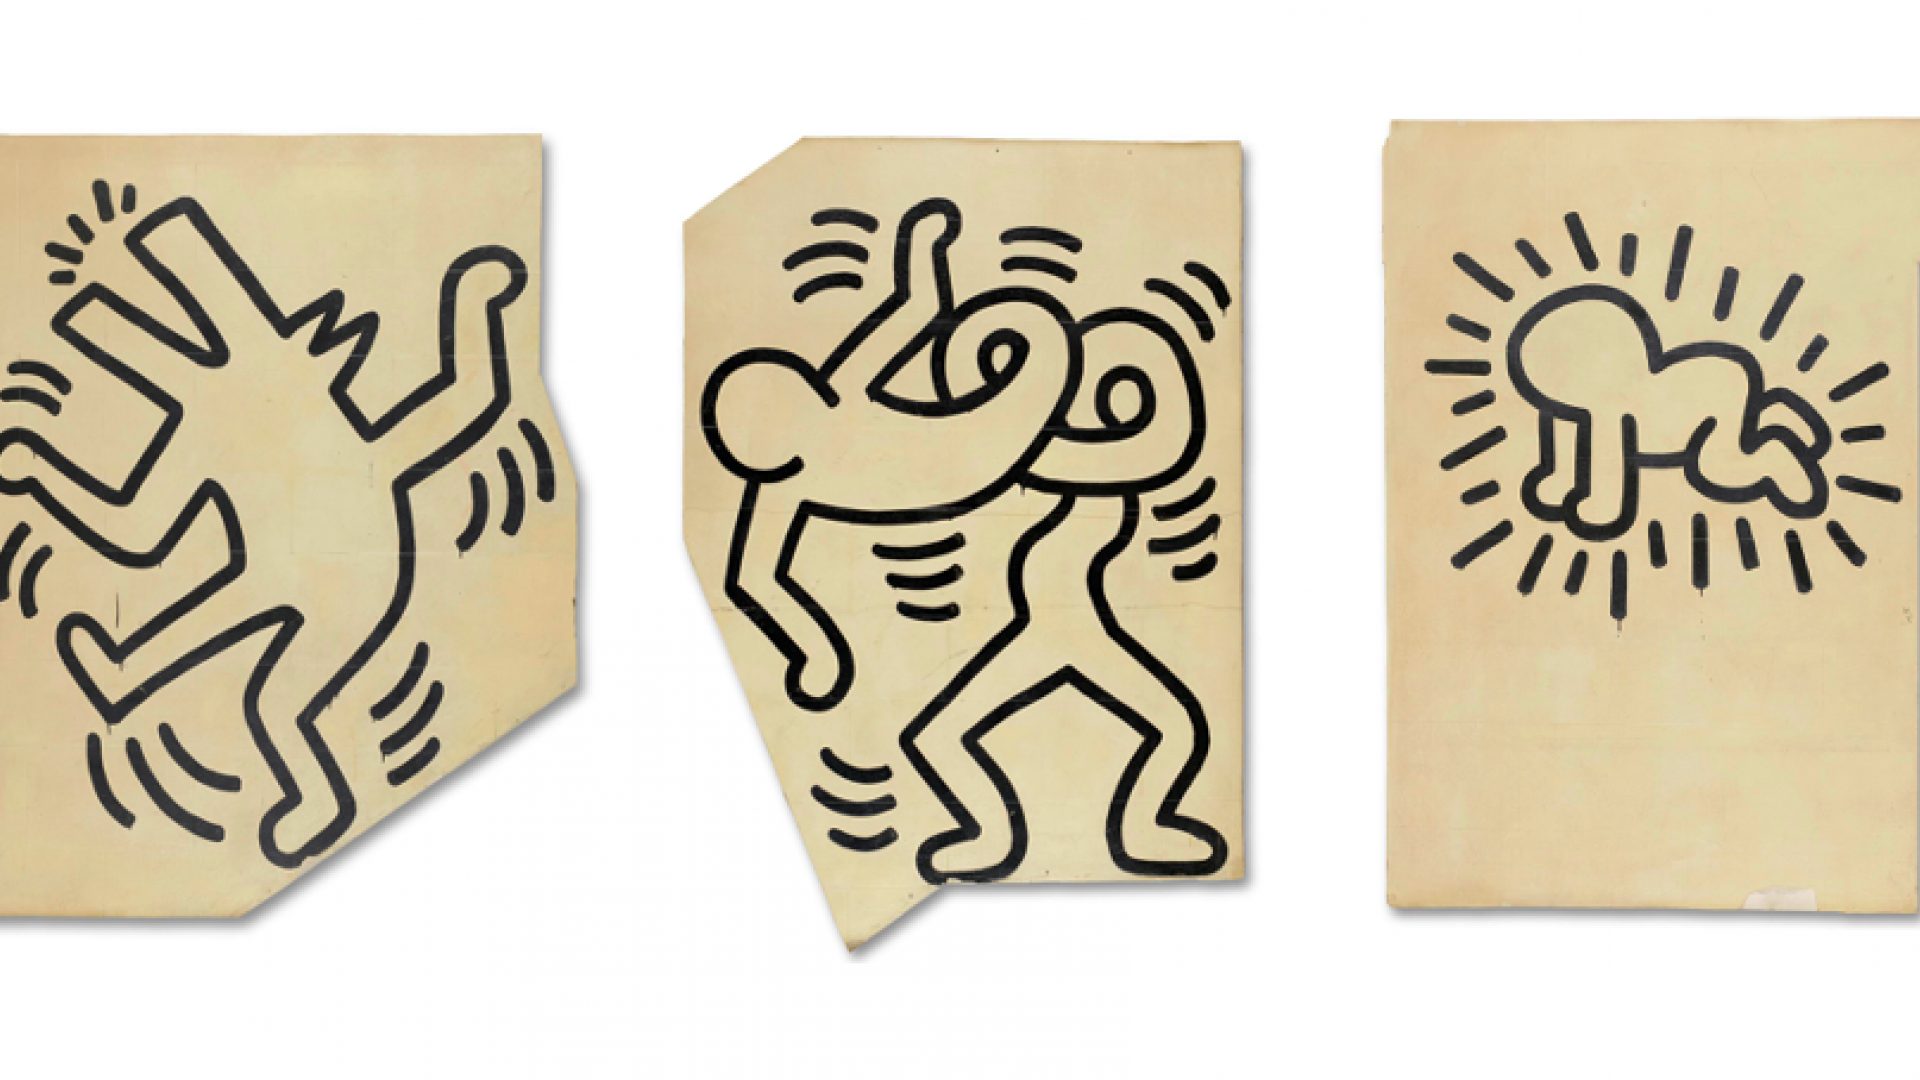 Het wereldberoemde werk van kunstenaar Keith Haring komt naar SCHUNCK